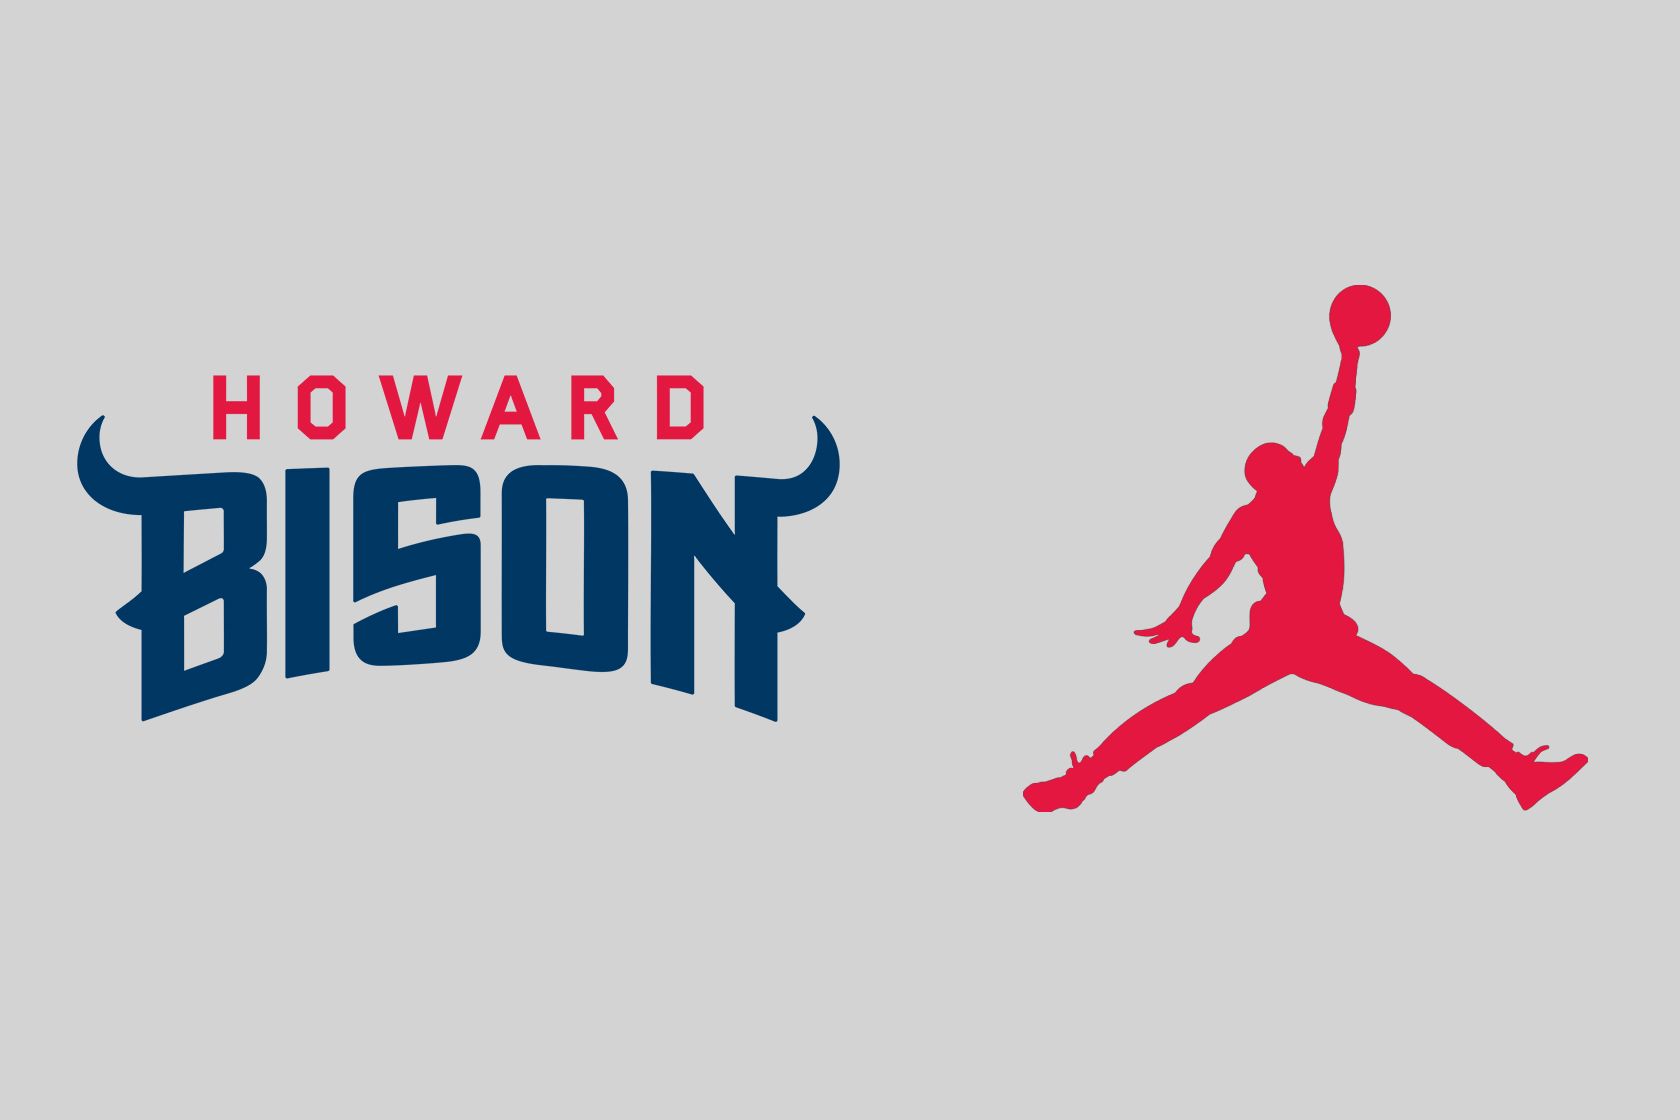 Howard University Jordan Brand Sponsorship Deal